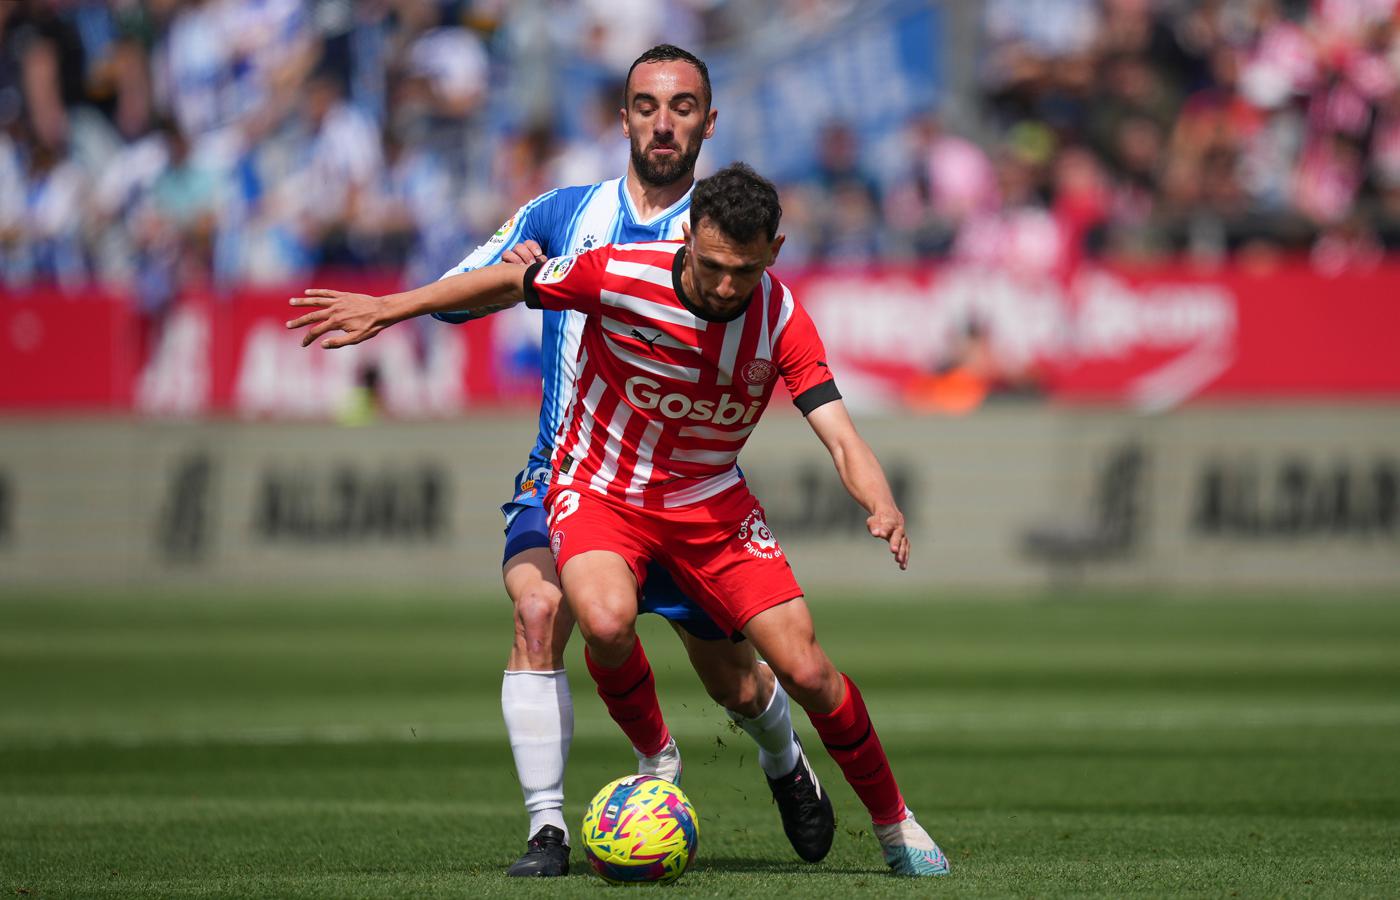 Girona - Espanyol - 2:1. Spanische Meisterschaft, 27. Runde. Spielbericht, Statistiken